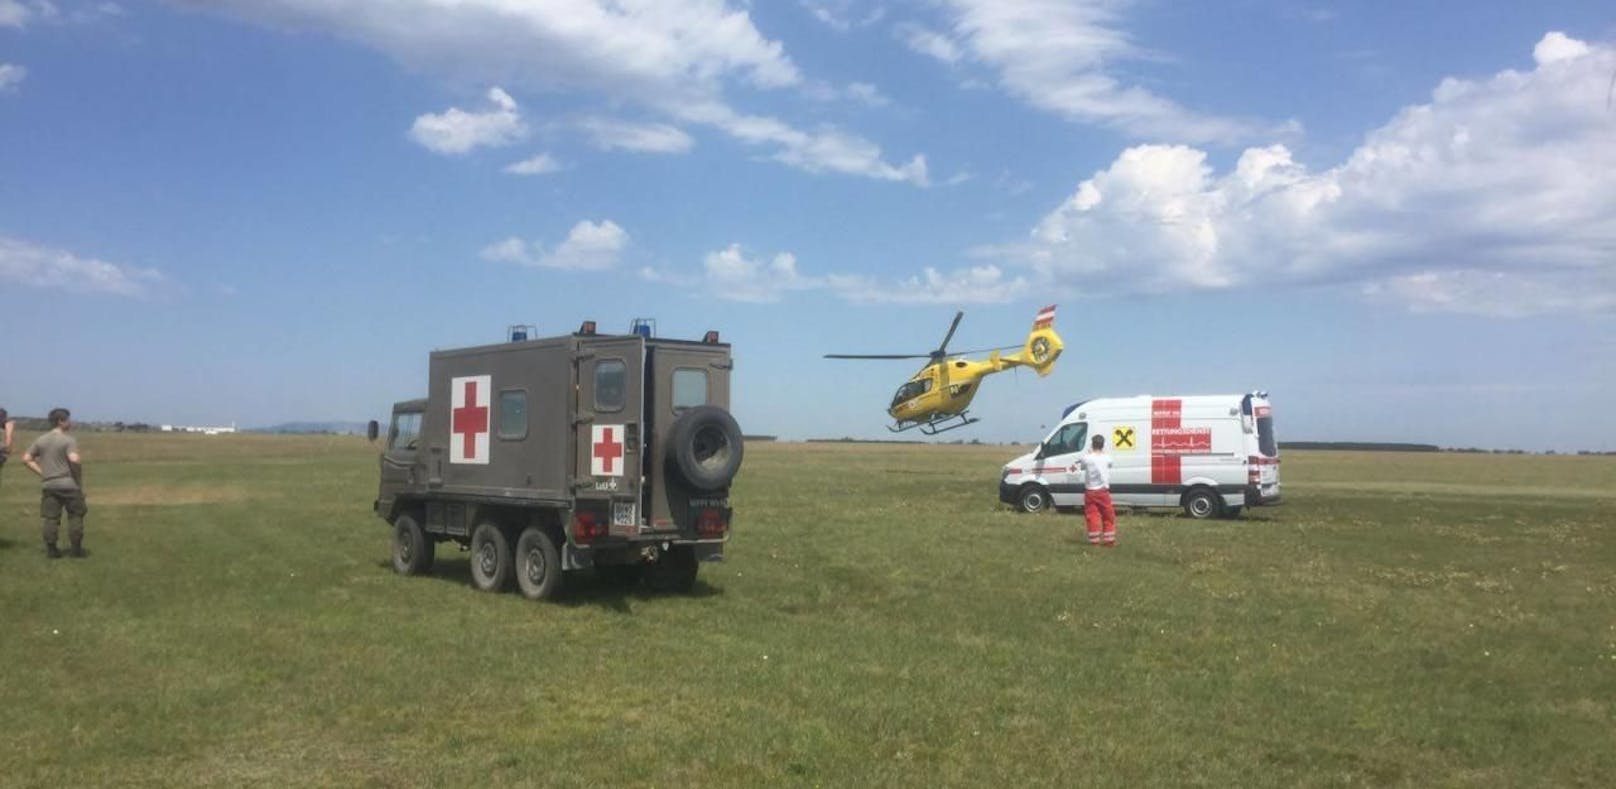 Per Christophorus-Hubschrauber wurde die Frau ins Spital geflogen.